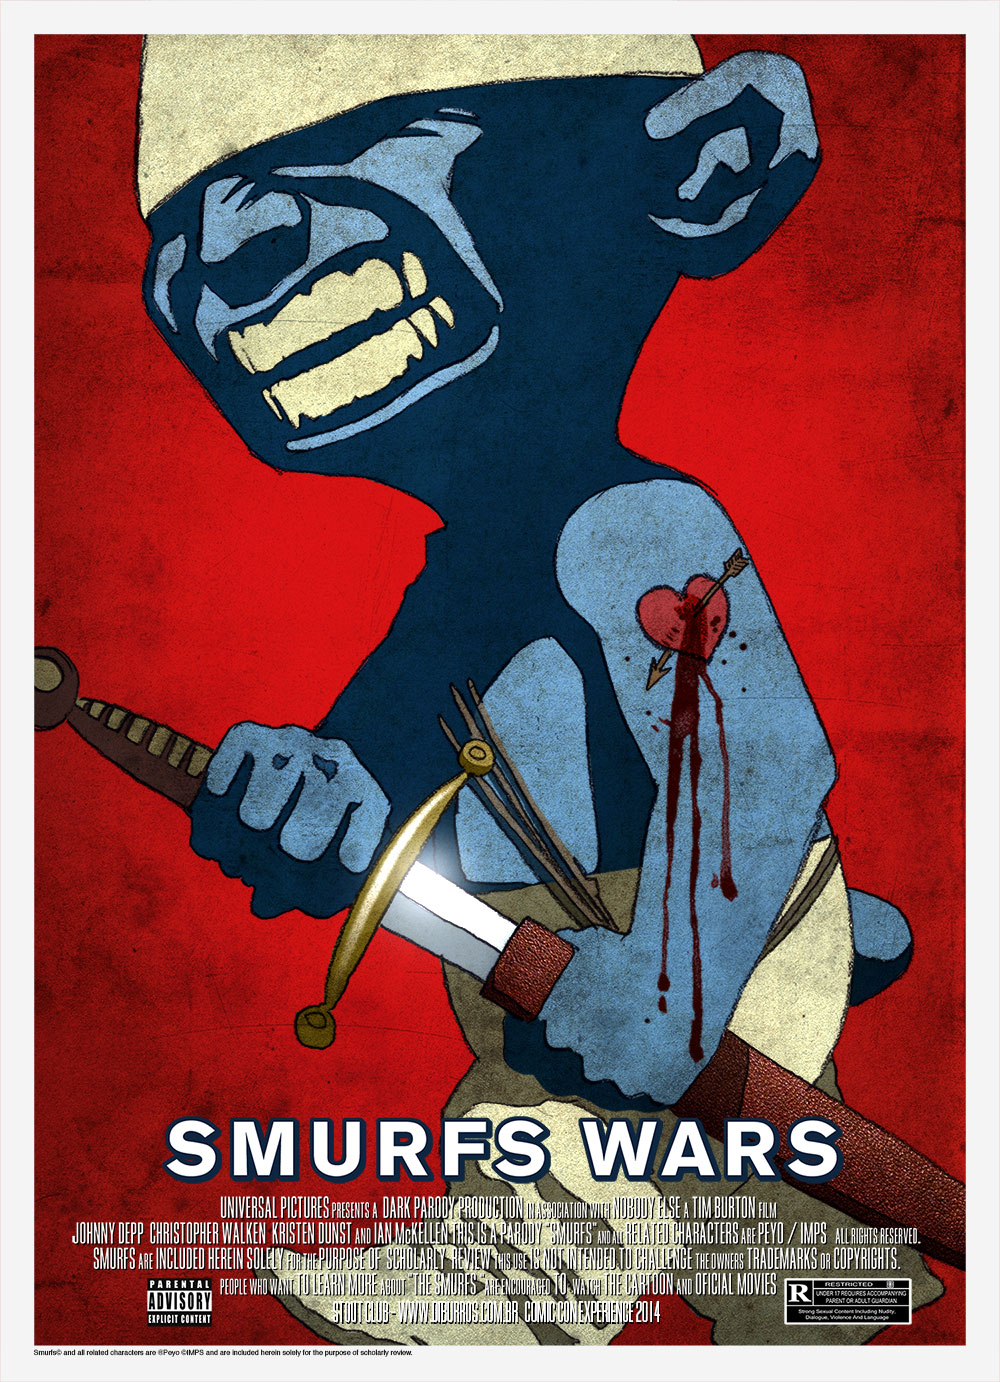 Os Smurfs 2 - Uma Surpresa Para Smurfette